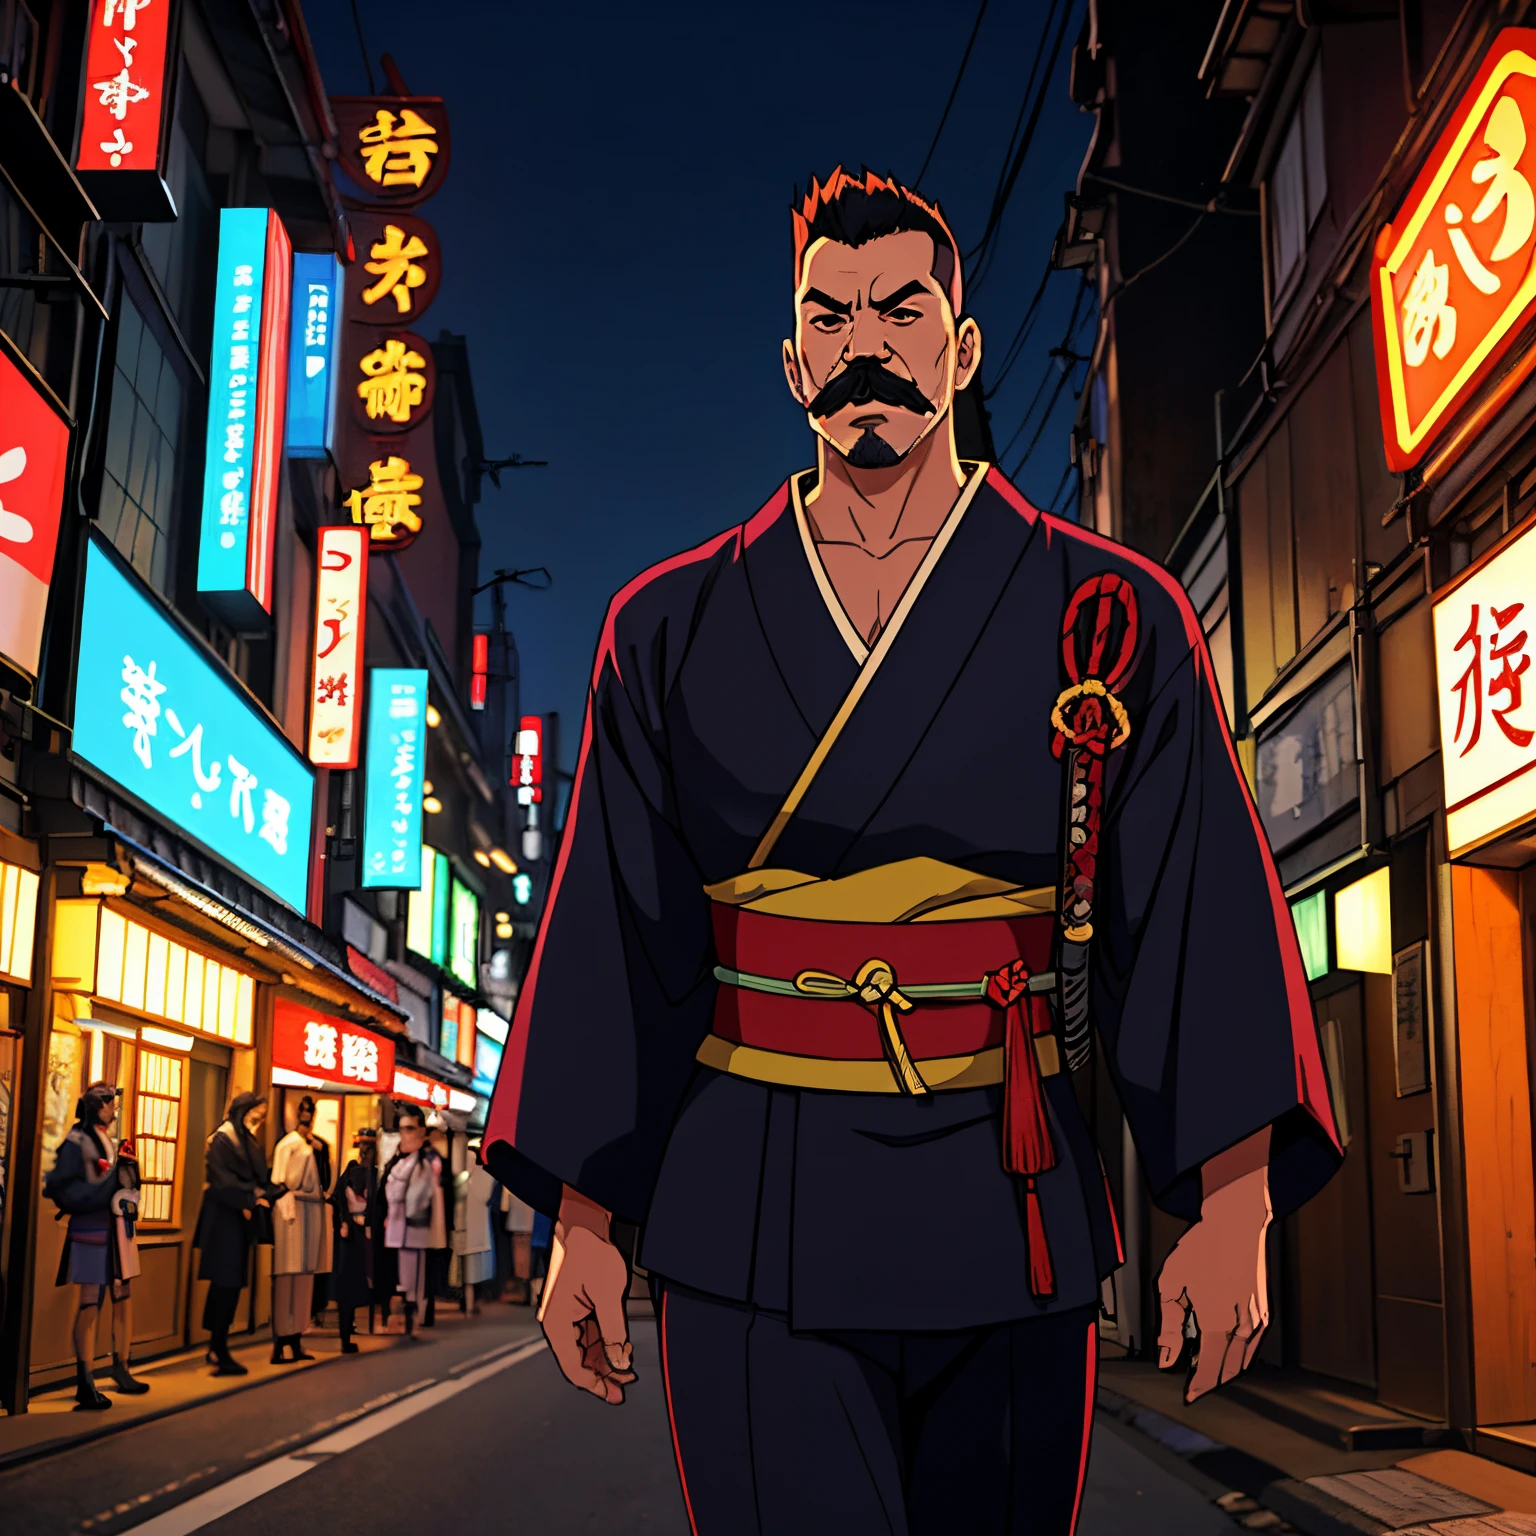 (Um samurai masculino com um moicano preto), (35 anos de idade), ((bigode comprido)), (usa um quimono velho da Era Meiji), (localizado na moderna Tóquio com luzes de néon brilhantes), carrega sua espada